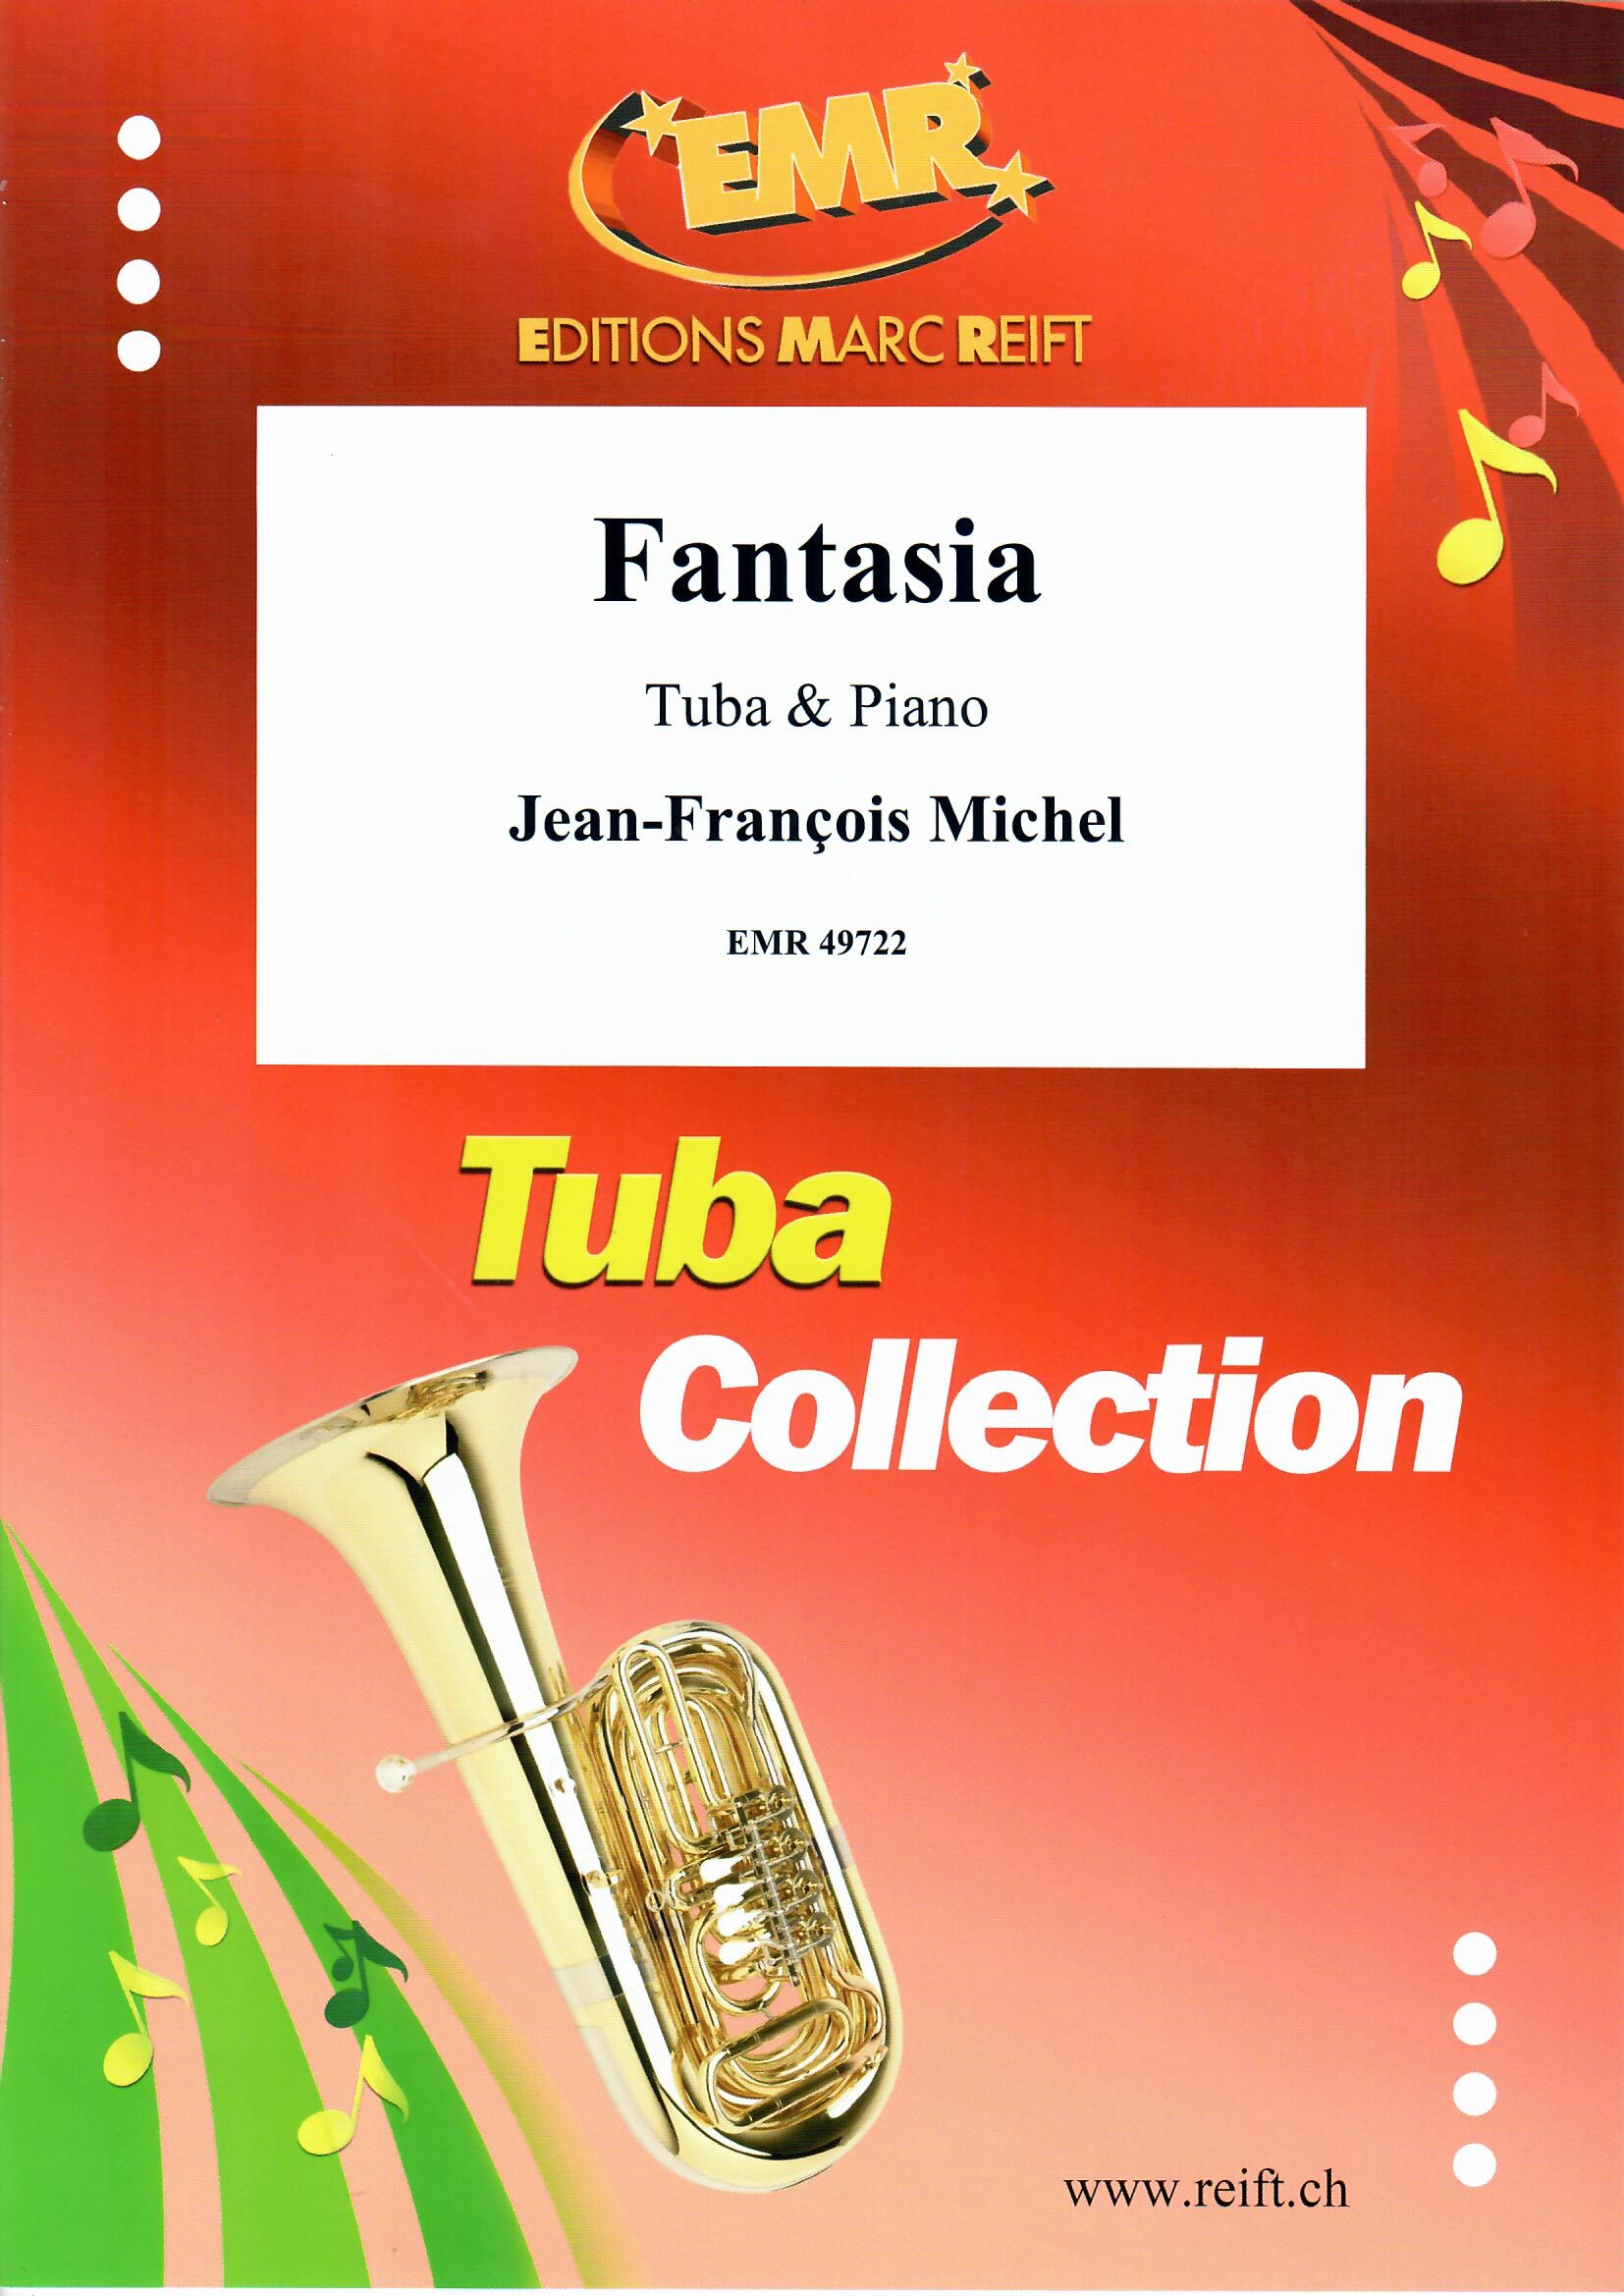 FANTASIA - Tuba & Piano